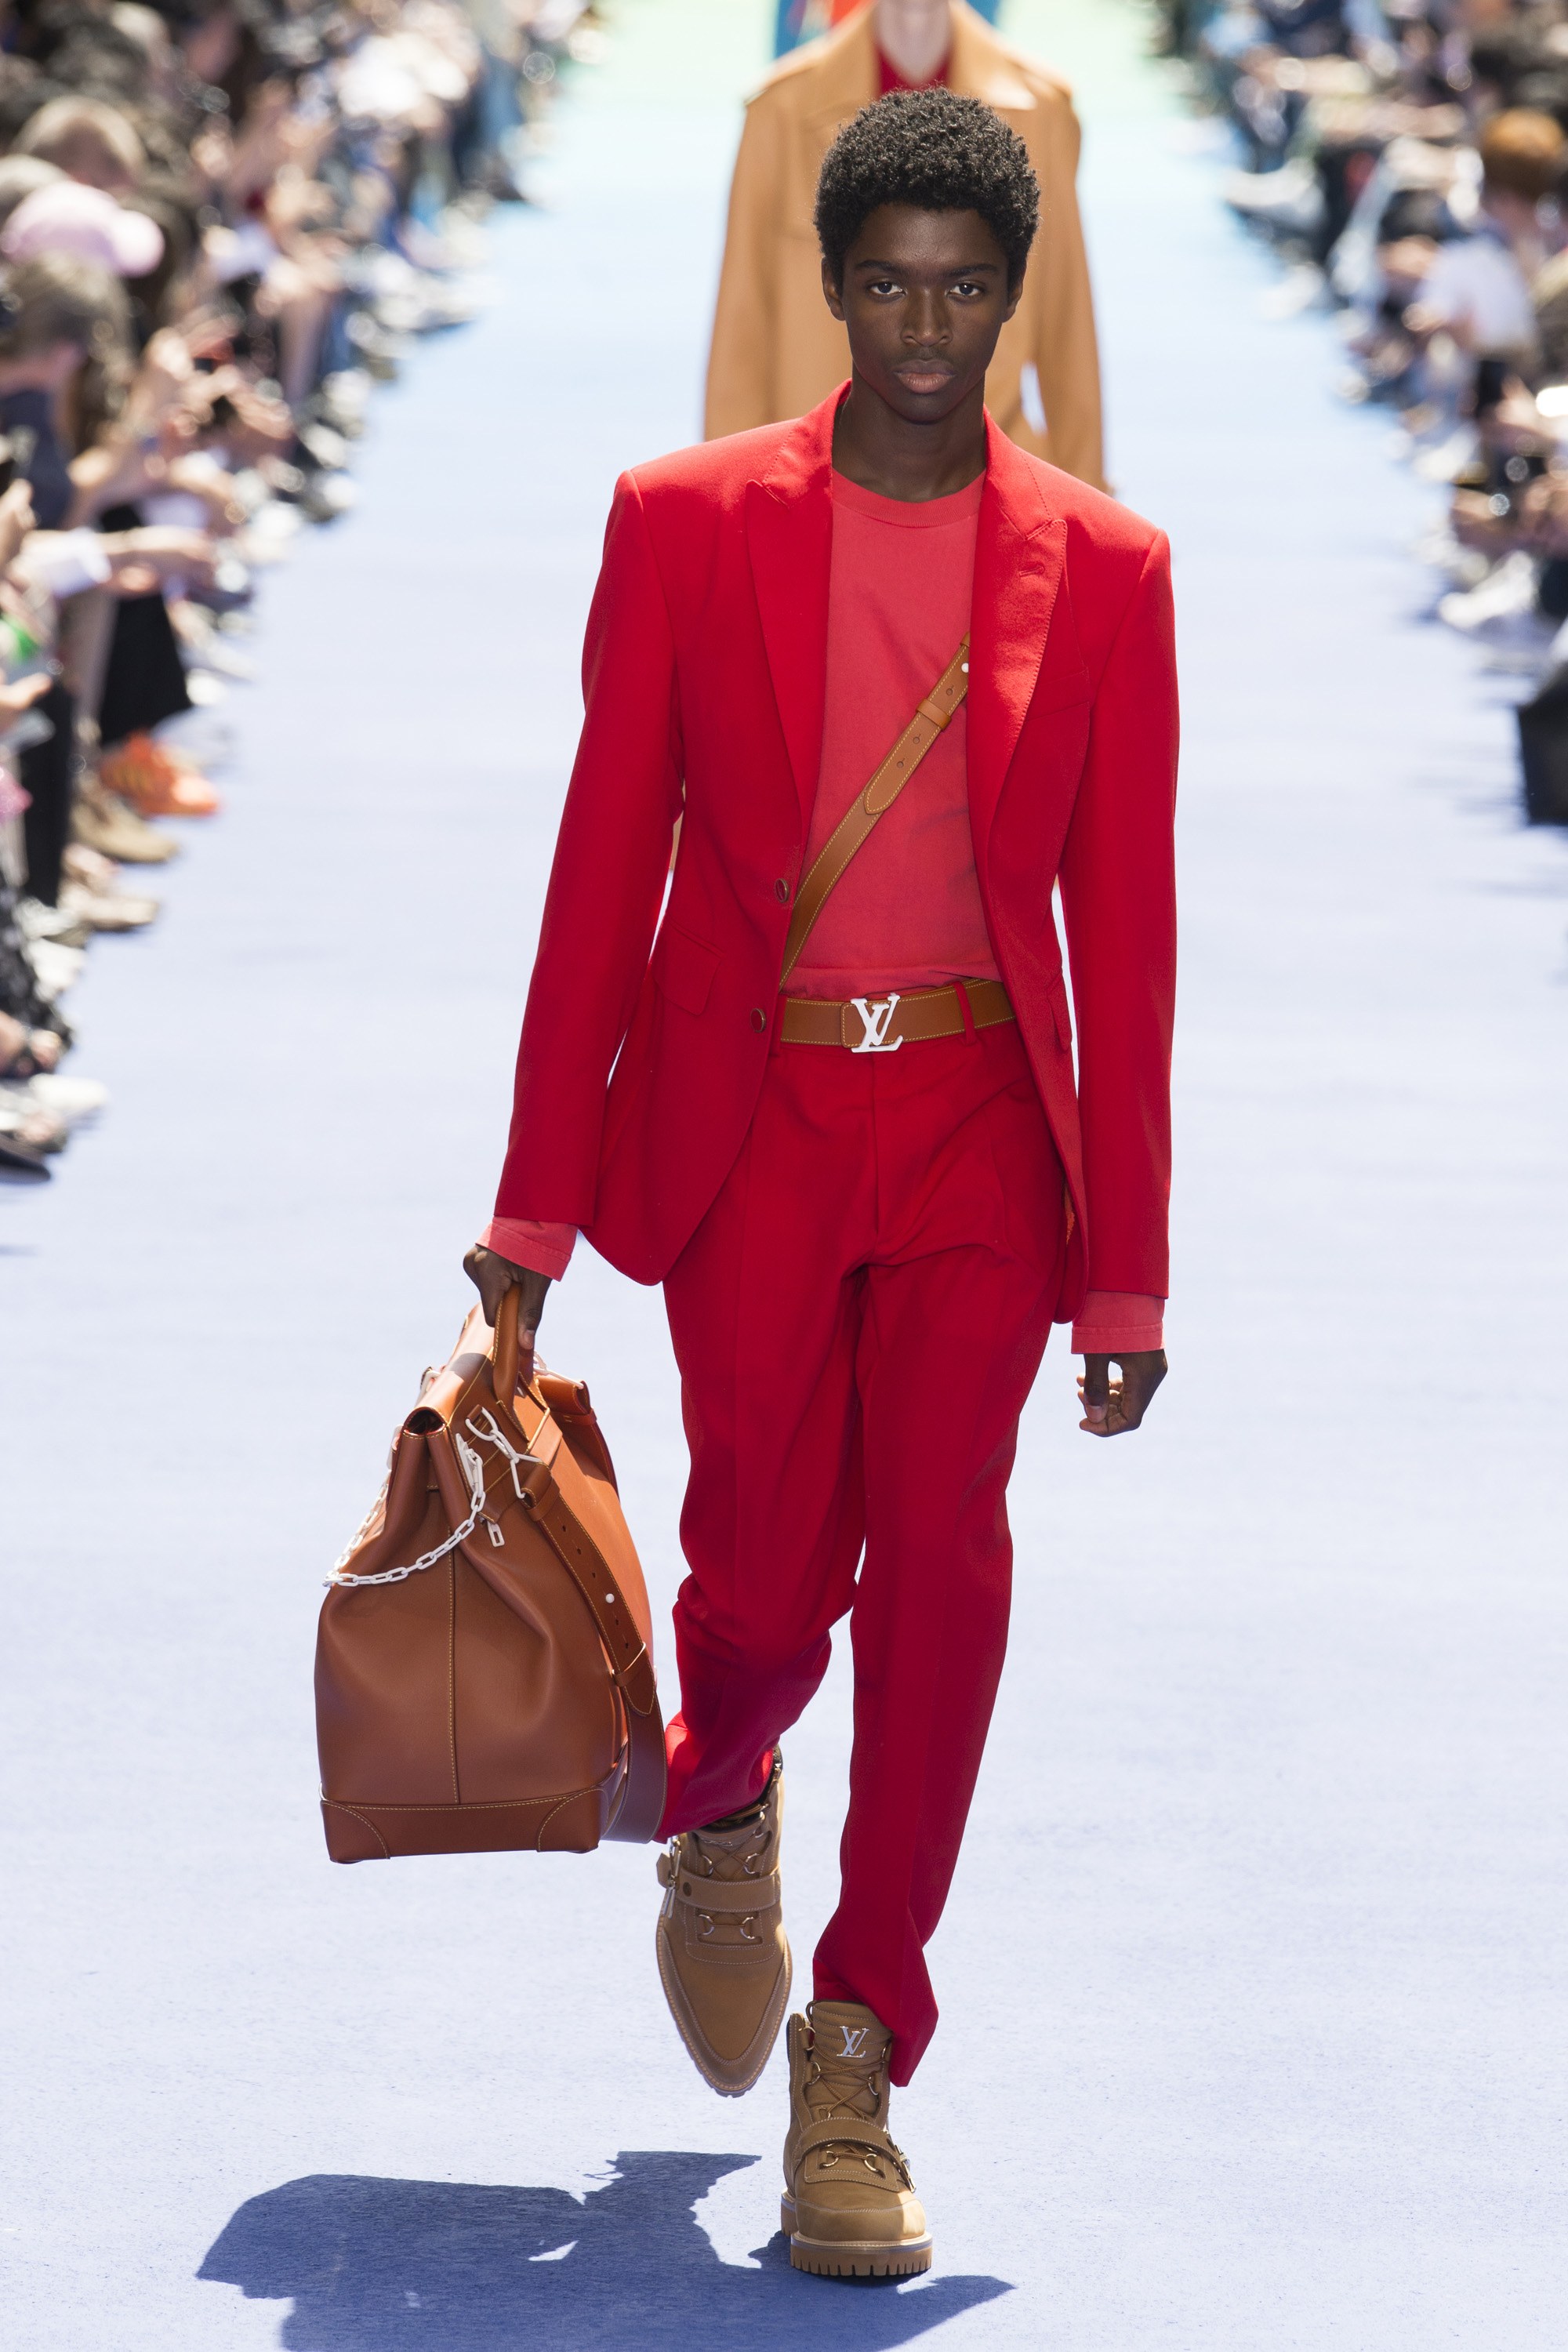 Colores y emoción: Cómo fue el debut de Virgil Abloh en Louis Vuitton